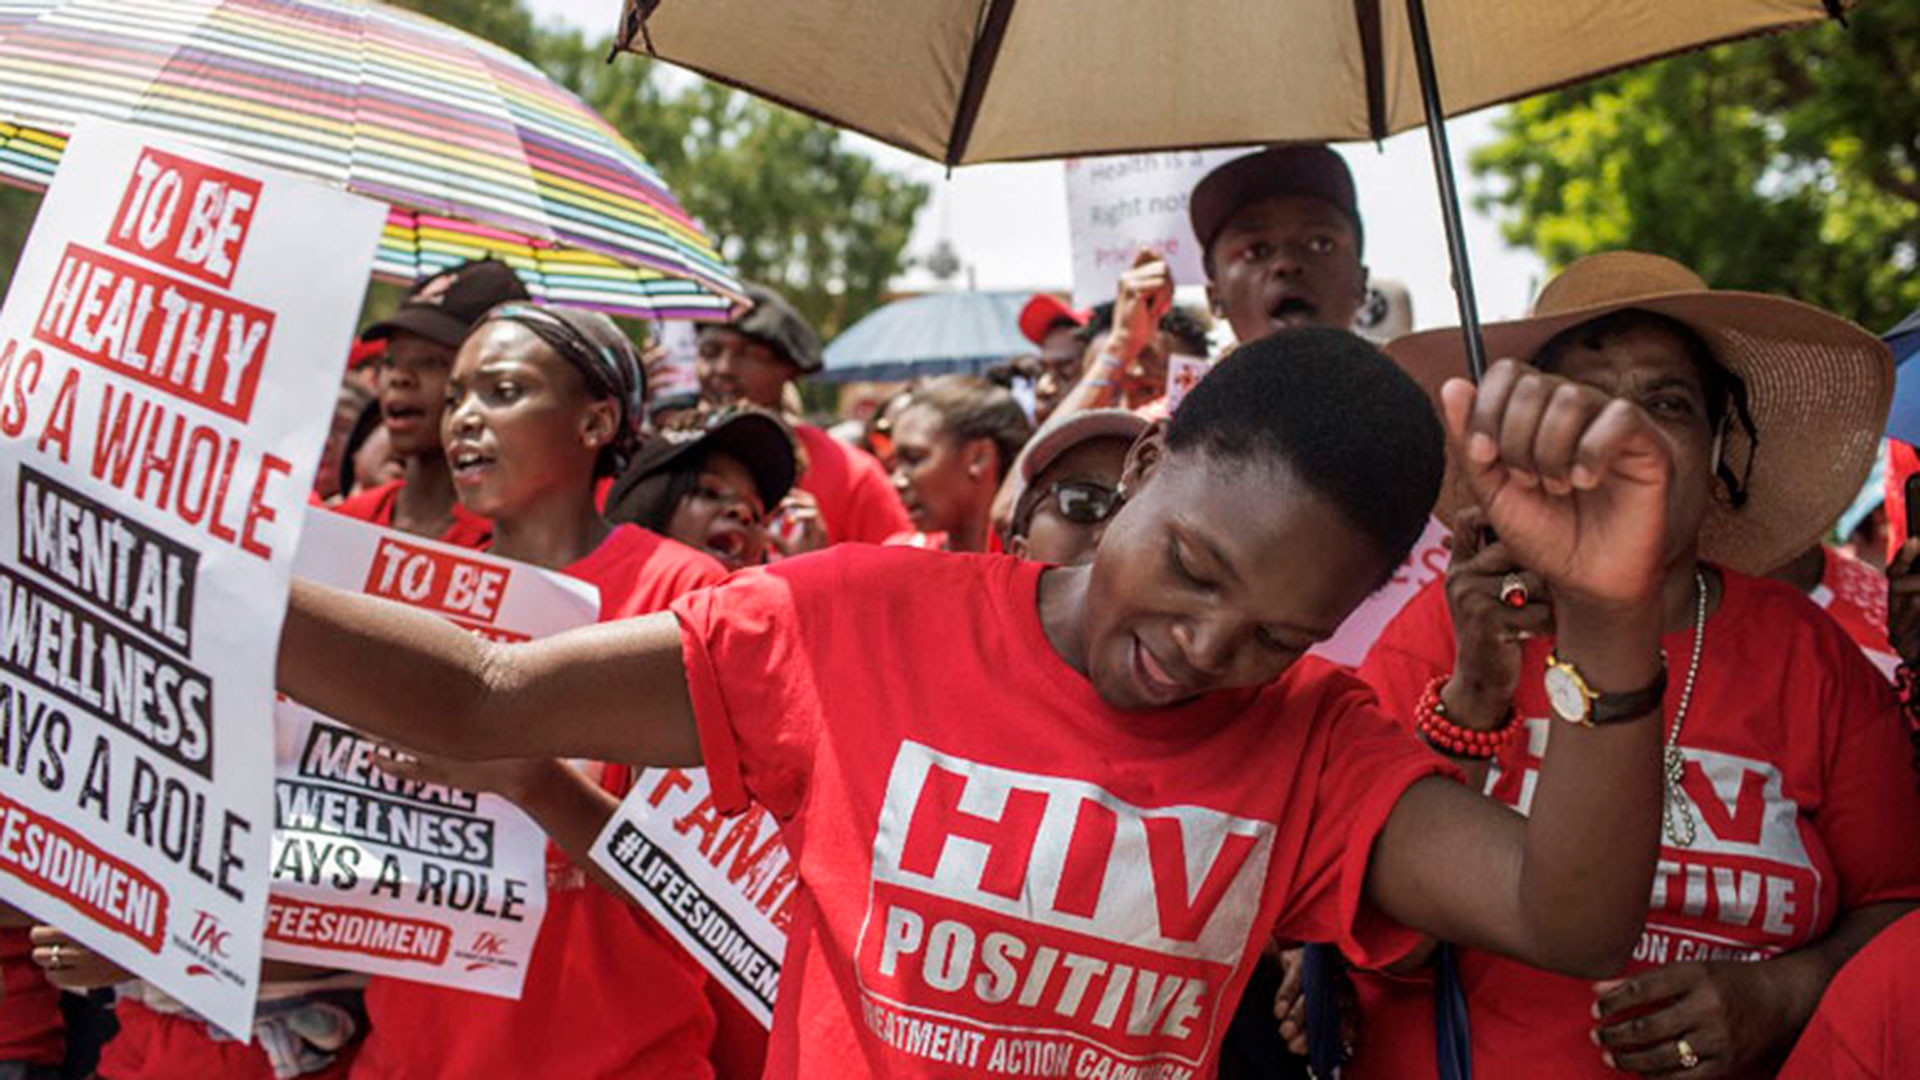 Miembros de Treatment Action Campaign (TAC) en una manifestación en Johannesburgo, Sudáfrica. (Imagen: GIANLUIGI GUERCIA / AFP)
